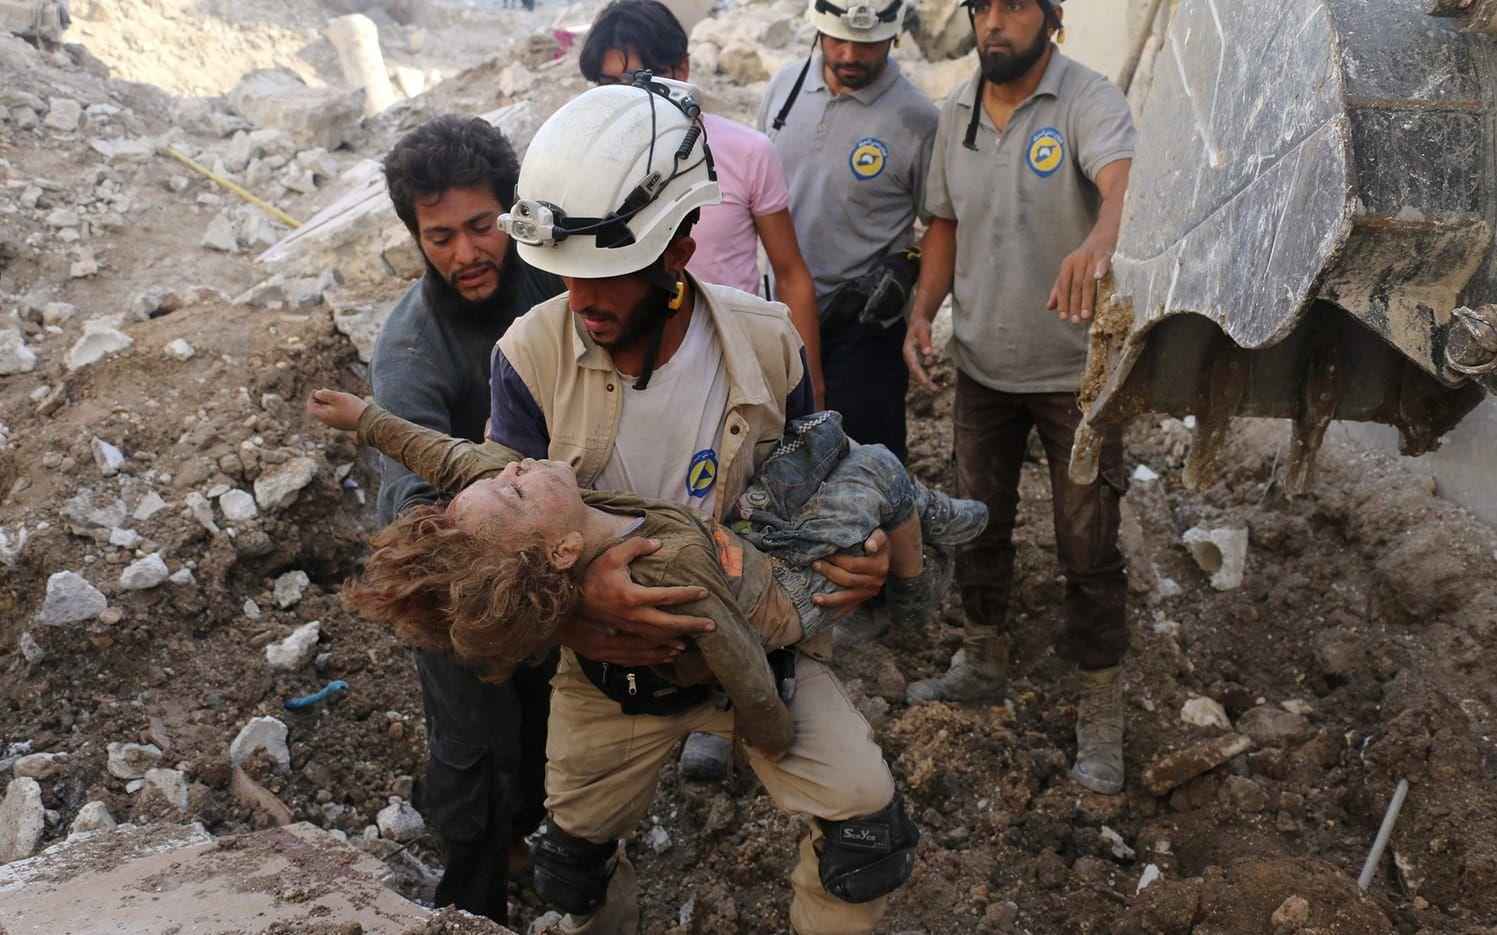 En syrisk hjälparbetare, kända som "De vita hjälmarna", håller i ett barns kropp som grävts fram i rasmassorna efter ännu ett brutalt flyganfall i Aleppo. BILD: Ameer Alhabi